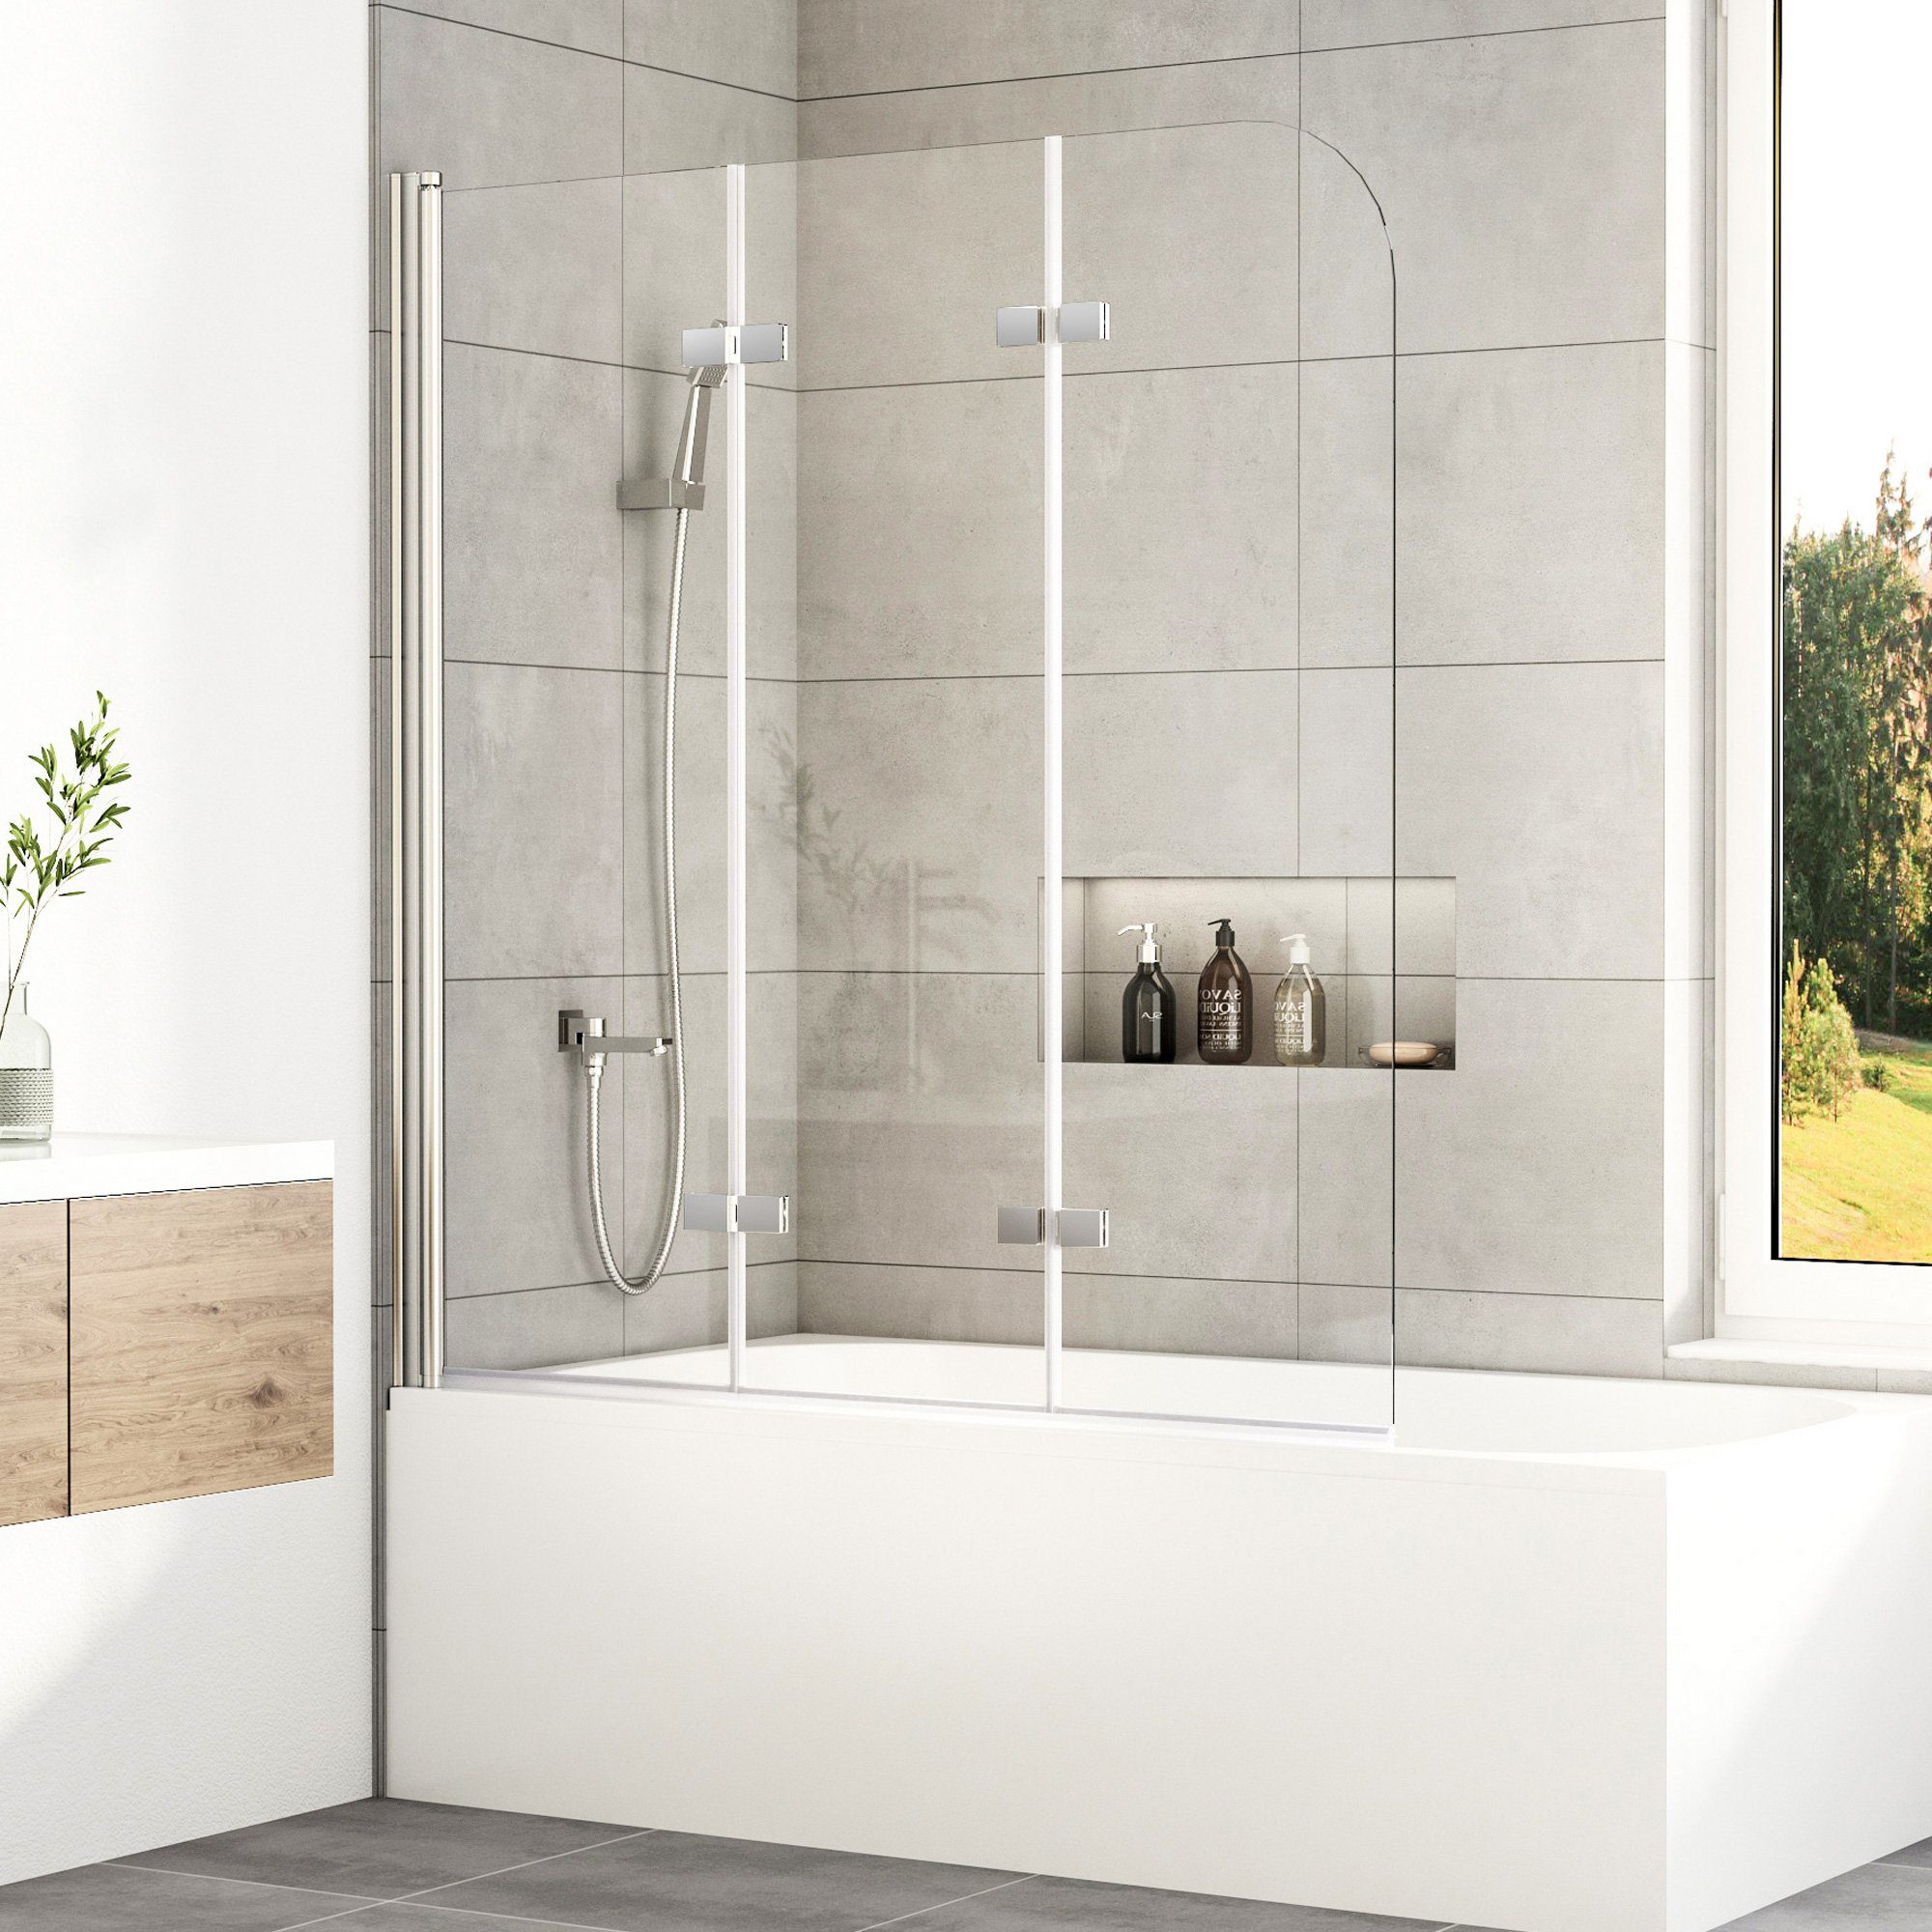 Boromal Badewannenaufsatz Duschwand für Badewanne Badewannenfaltwand 3- teilig faltbar mit NANO, Einscheibensicherheitsglas, Sicherheitsglas nach  EN 12150, Easy-Clean Oberflächenbeschichtung